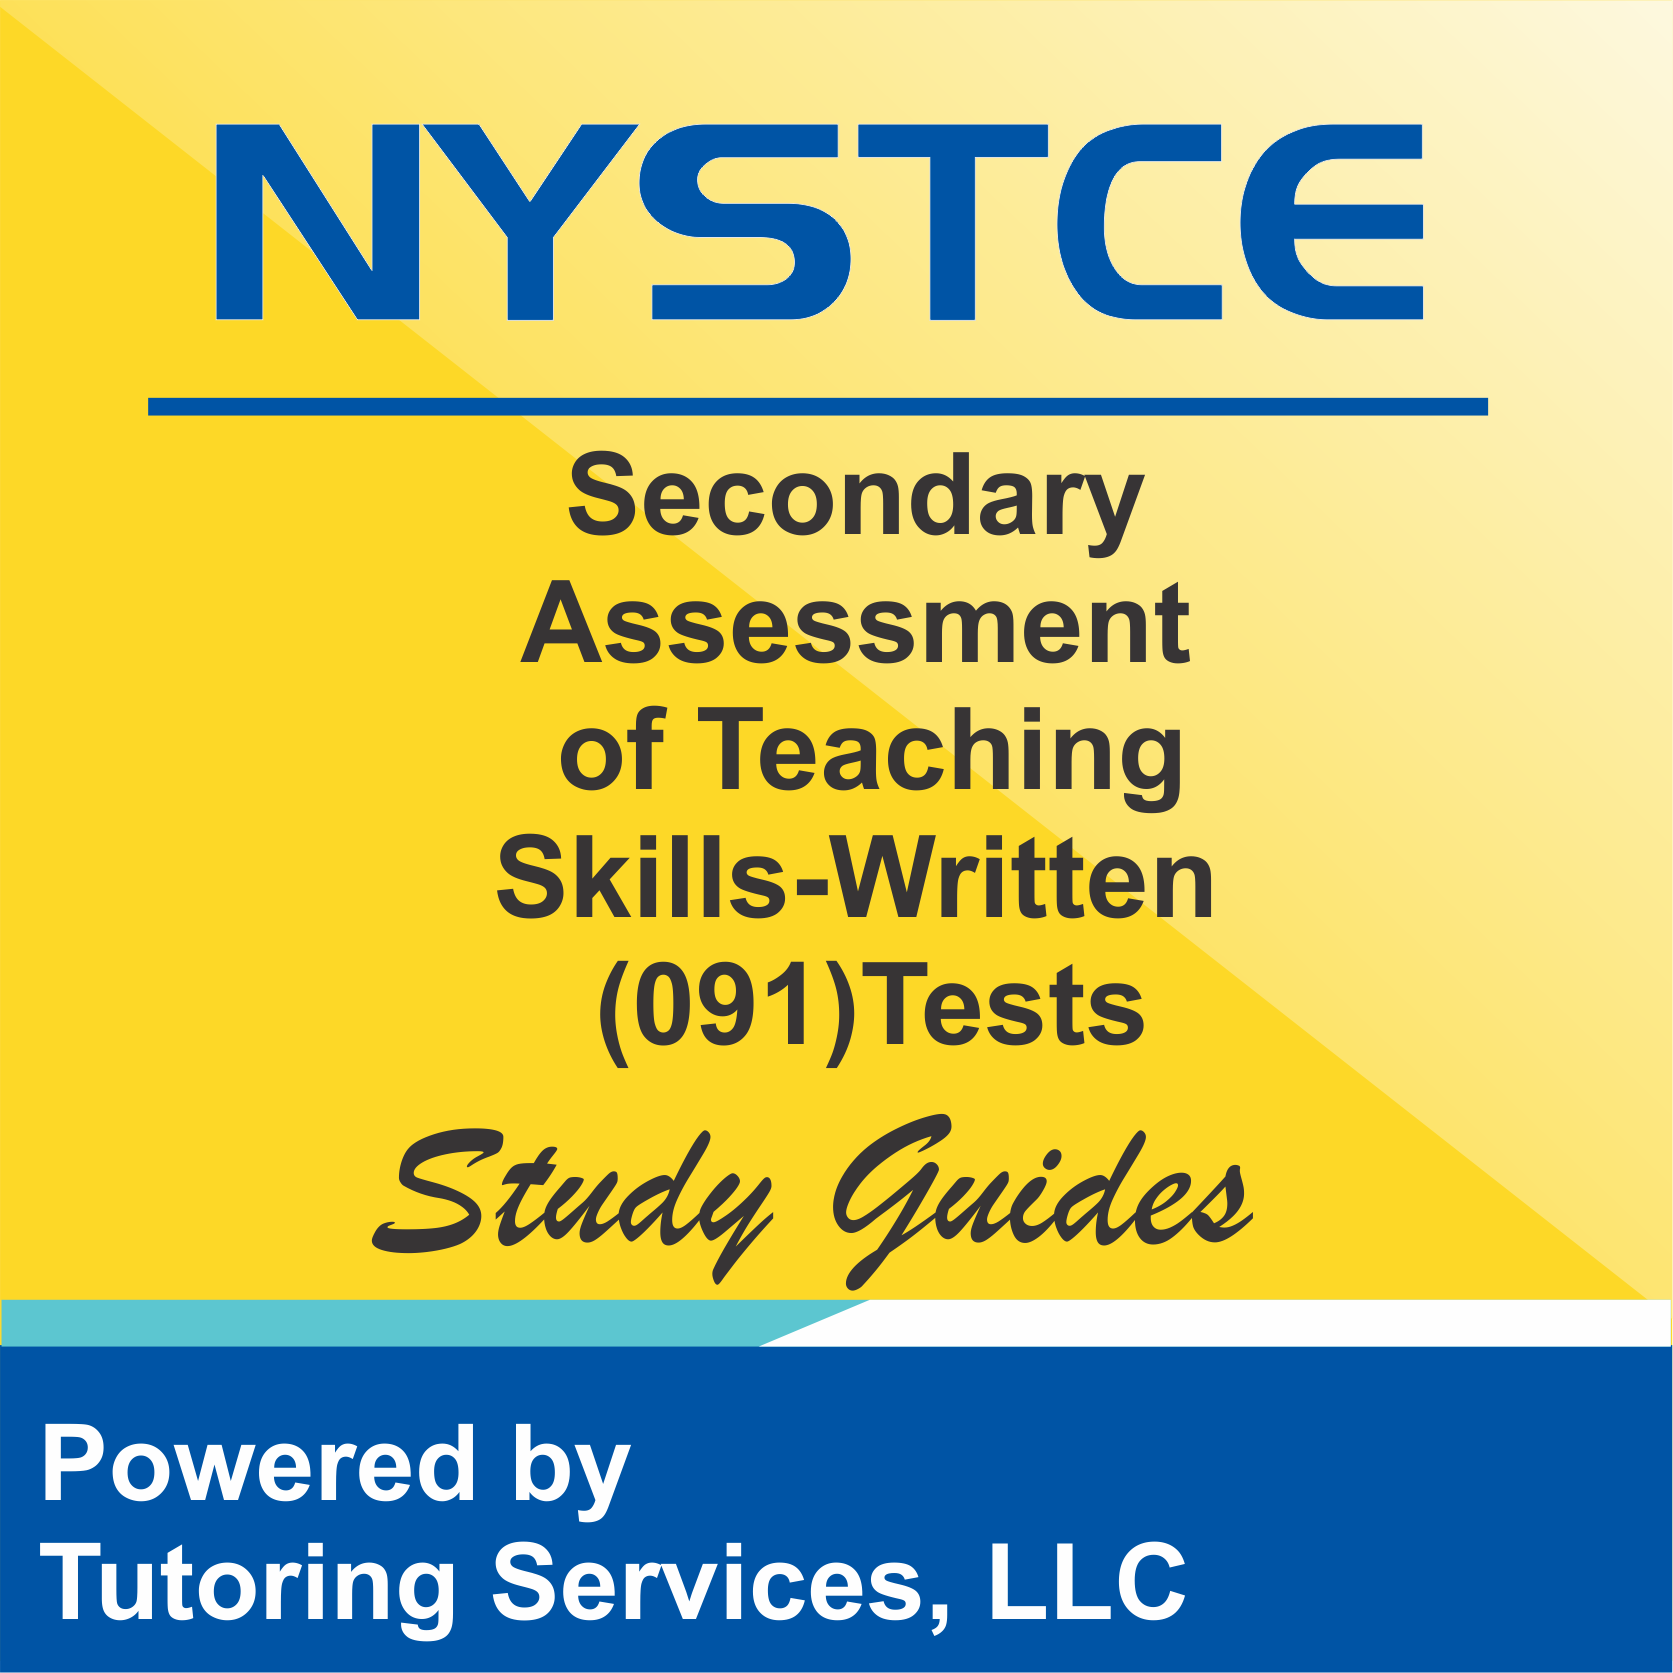 NYSTCE New York Public Teacher Test Details for Secondary Assessment of Teaching Skills-Written 091